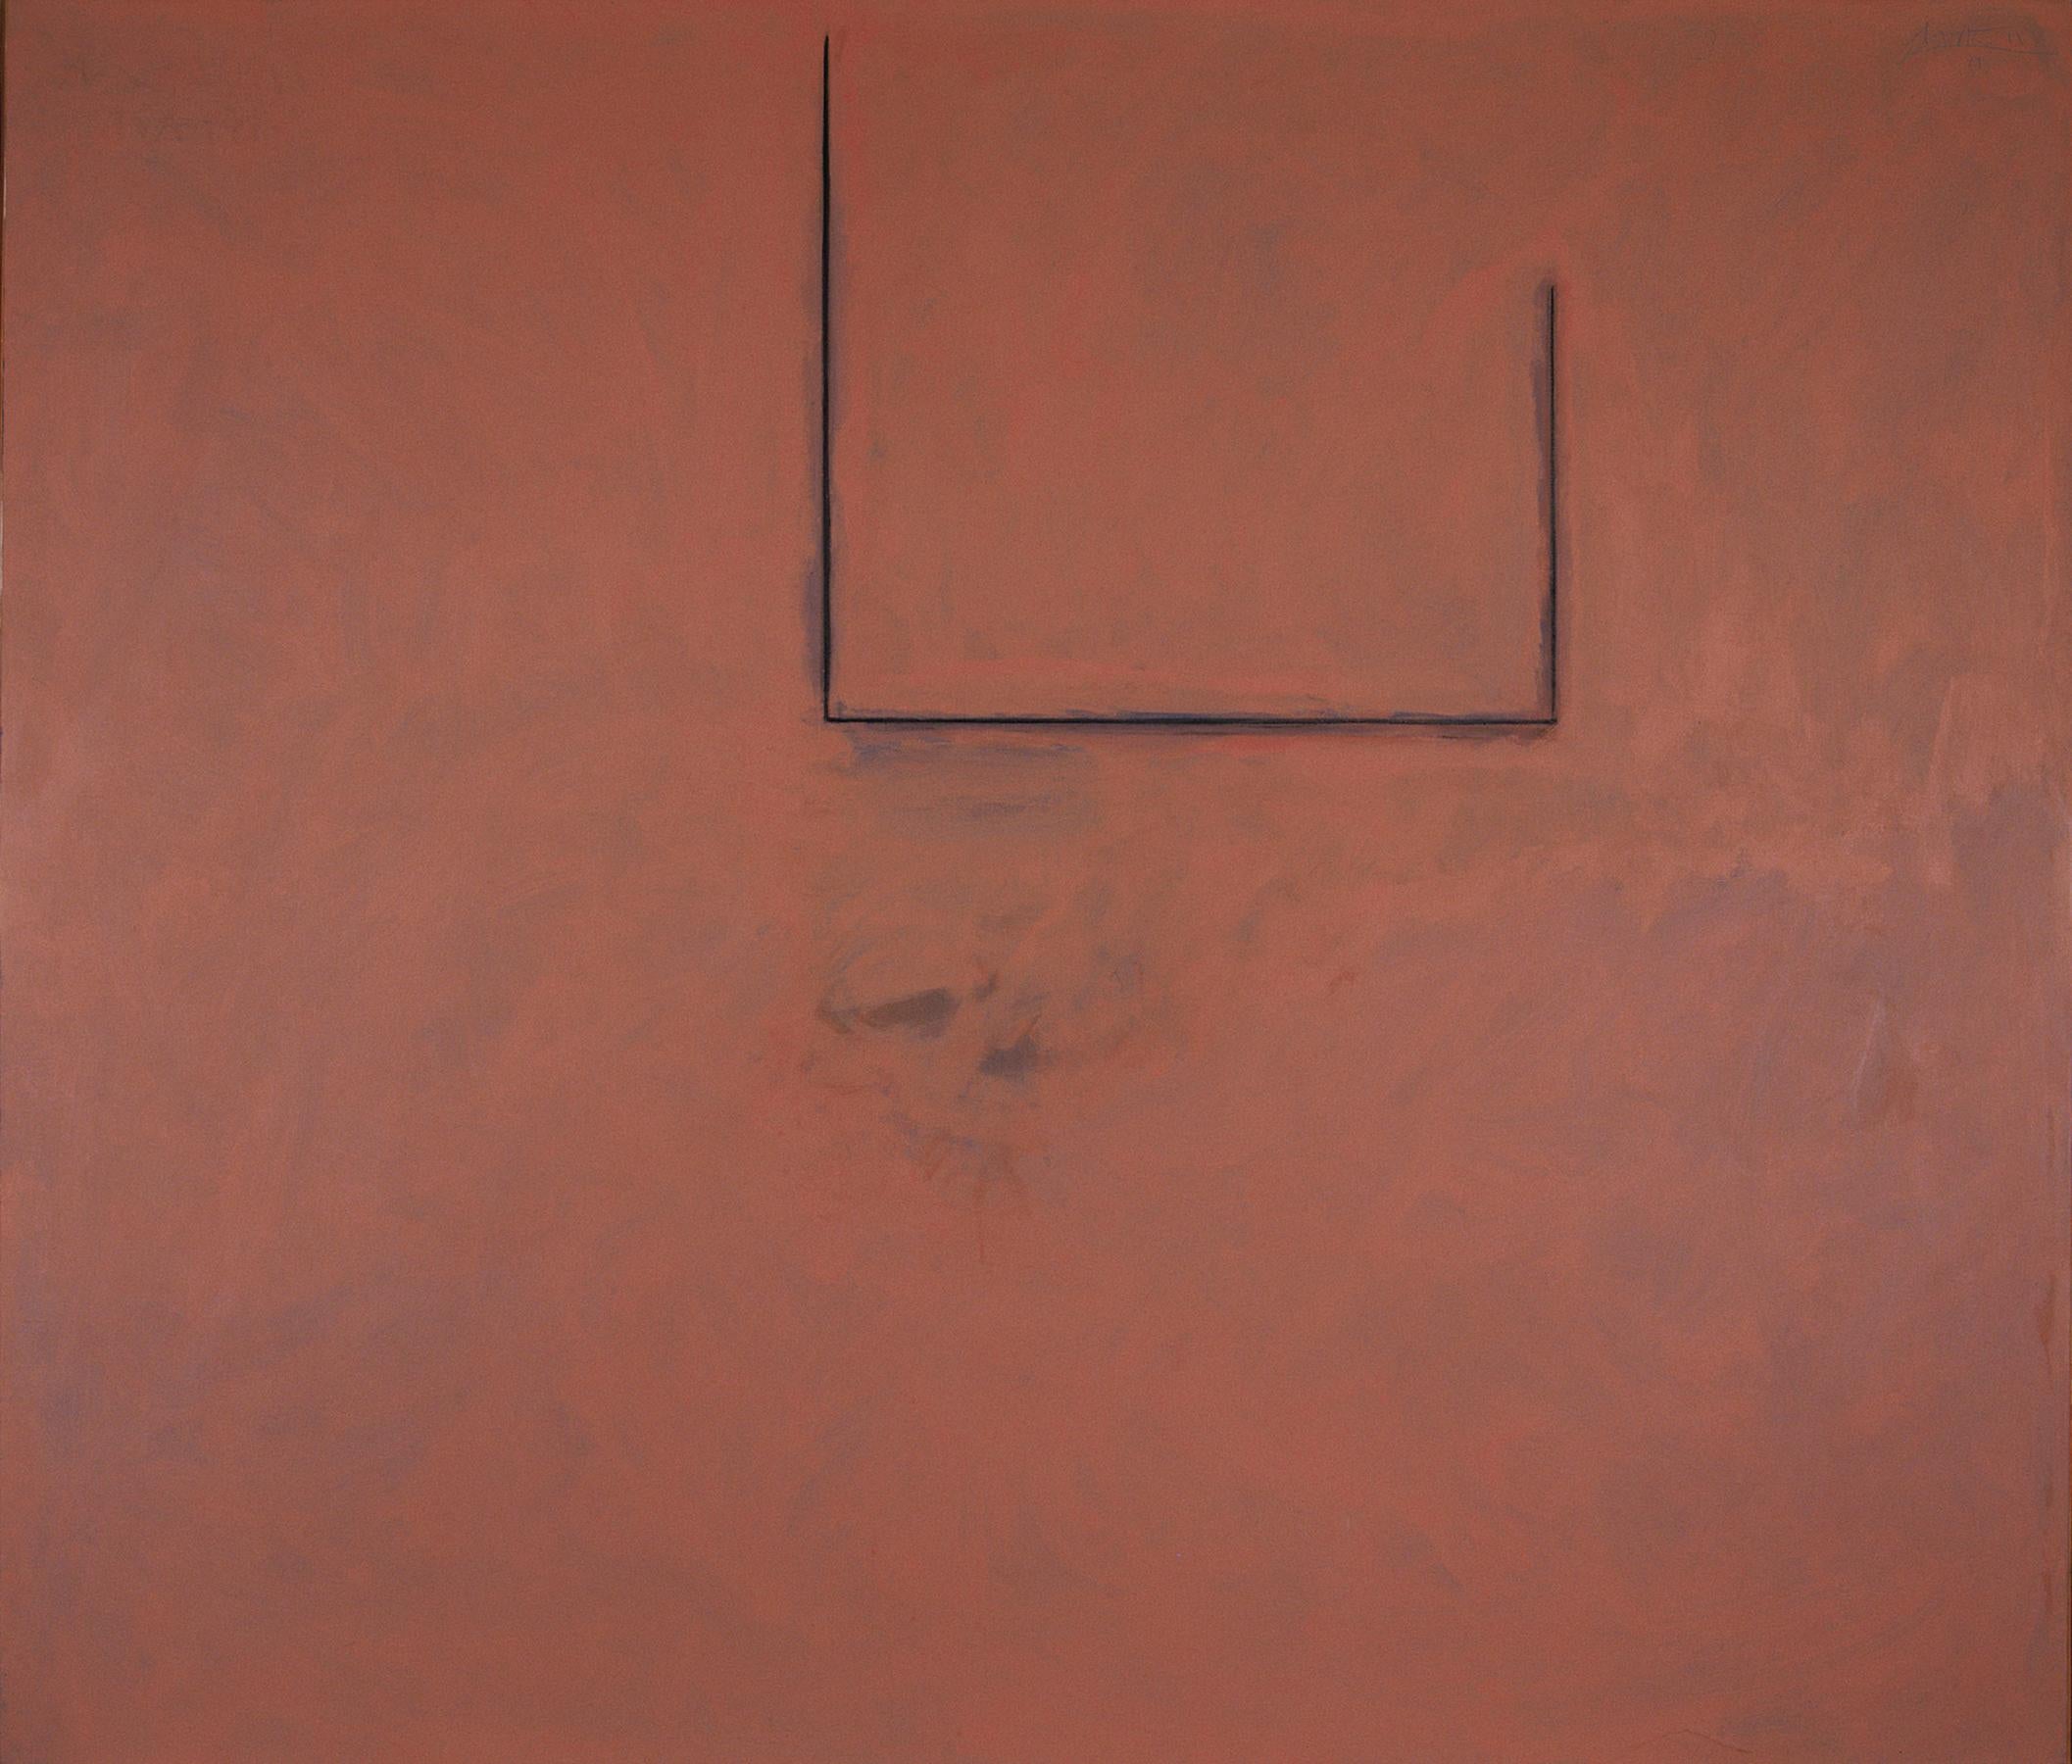 Abstract Painting Robert Motherwell - Premonition ouverte, avec fleurs sur gris